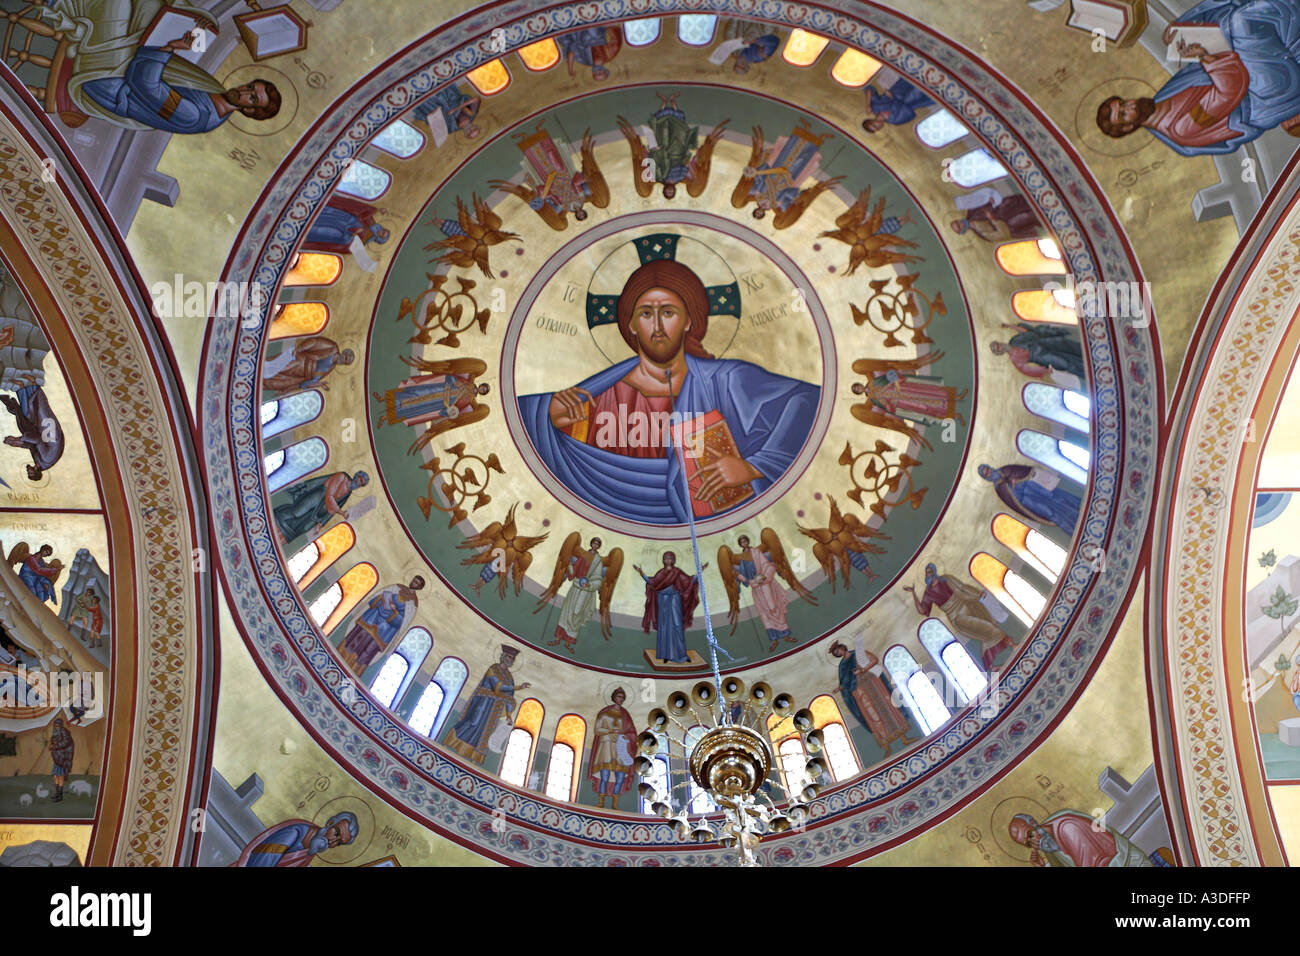 Vue de l'intérieur de l'église grecque orthodoxe metropolis ypapanti, Thira, Santorin, Grèce Banque D'Images